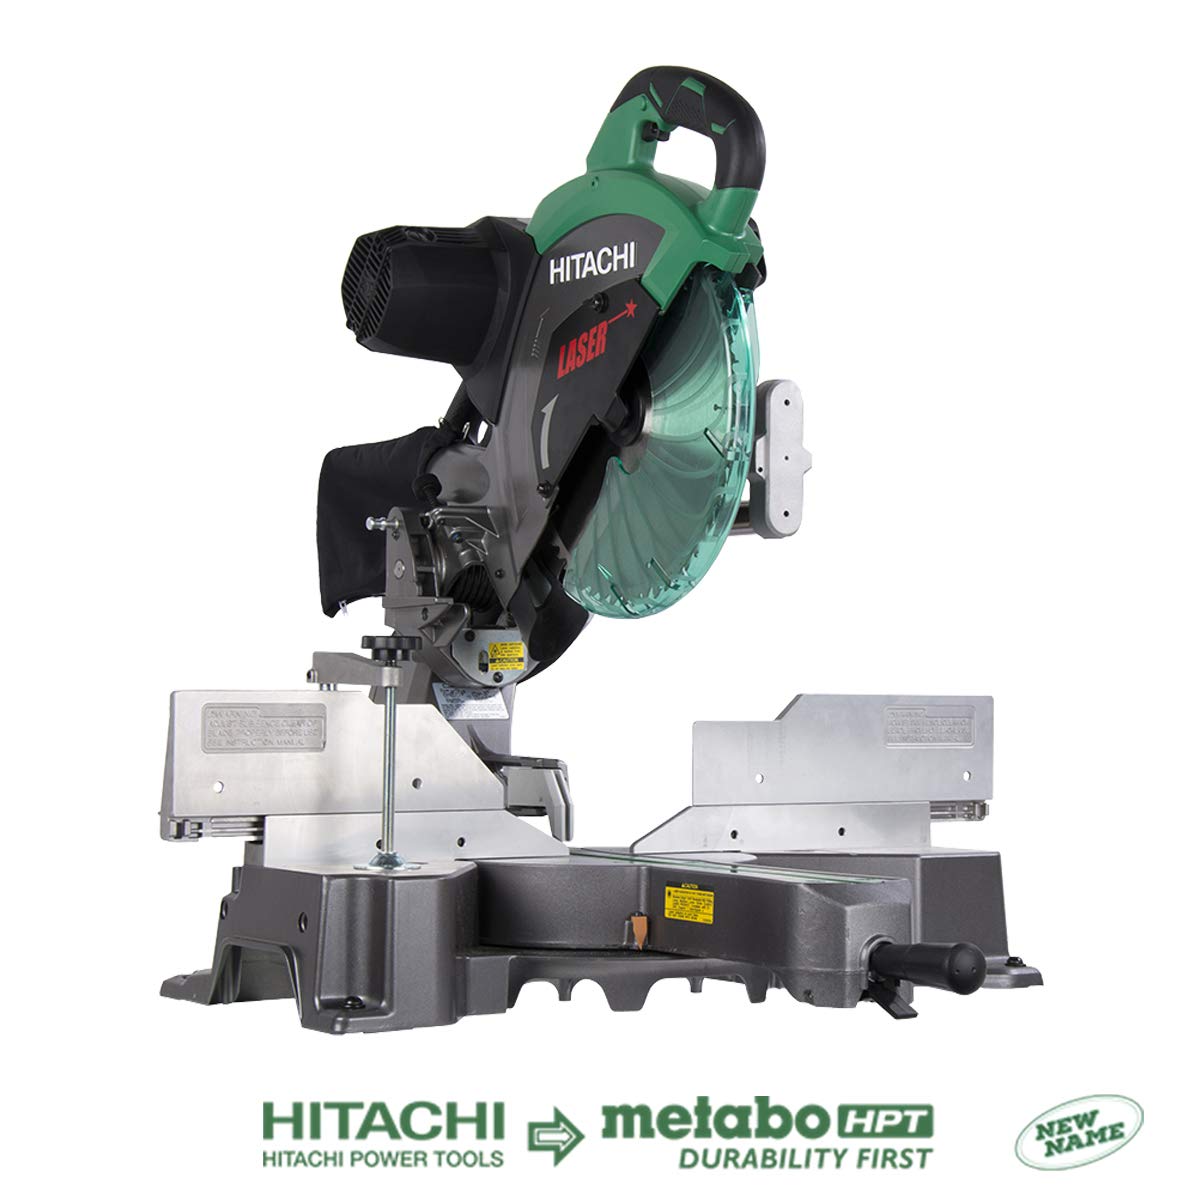 Hitachi C12RSH2 miter saw